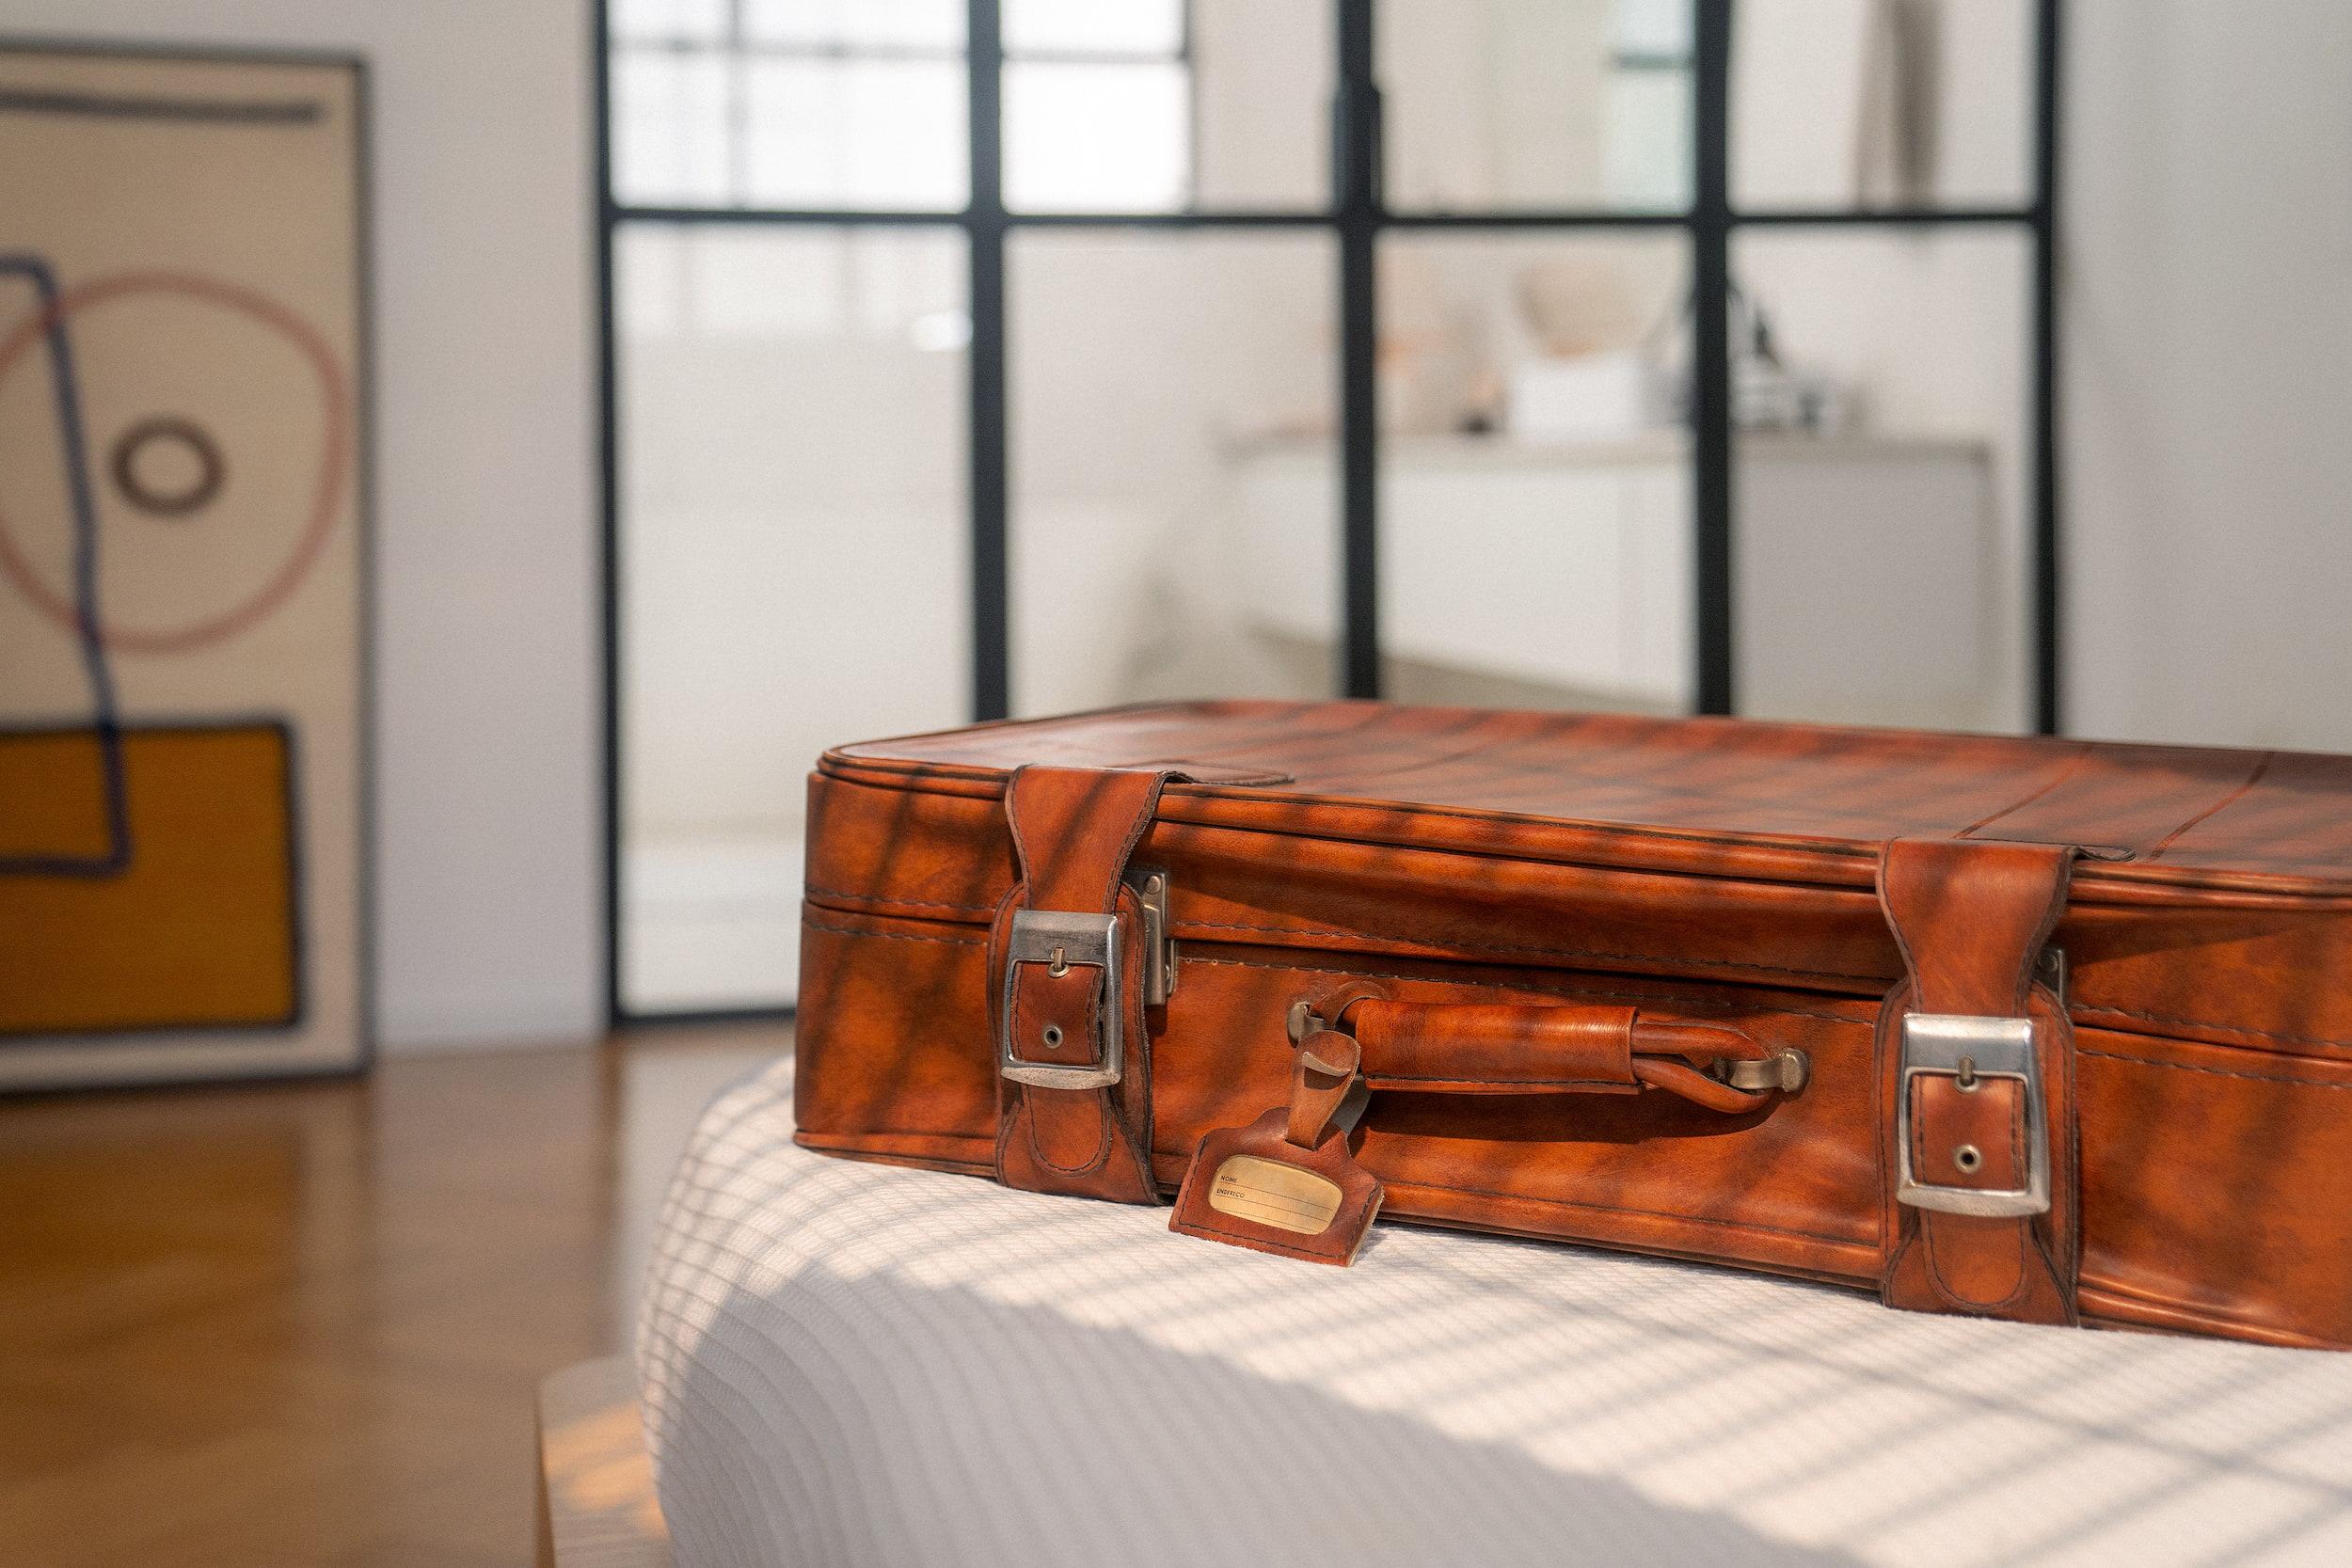 Passagem aérea na Black Friday: imagem de uma mala de viagem sobre uma cama com lençol branco. A mala é marrom, de couro.